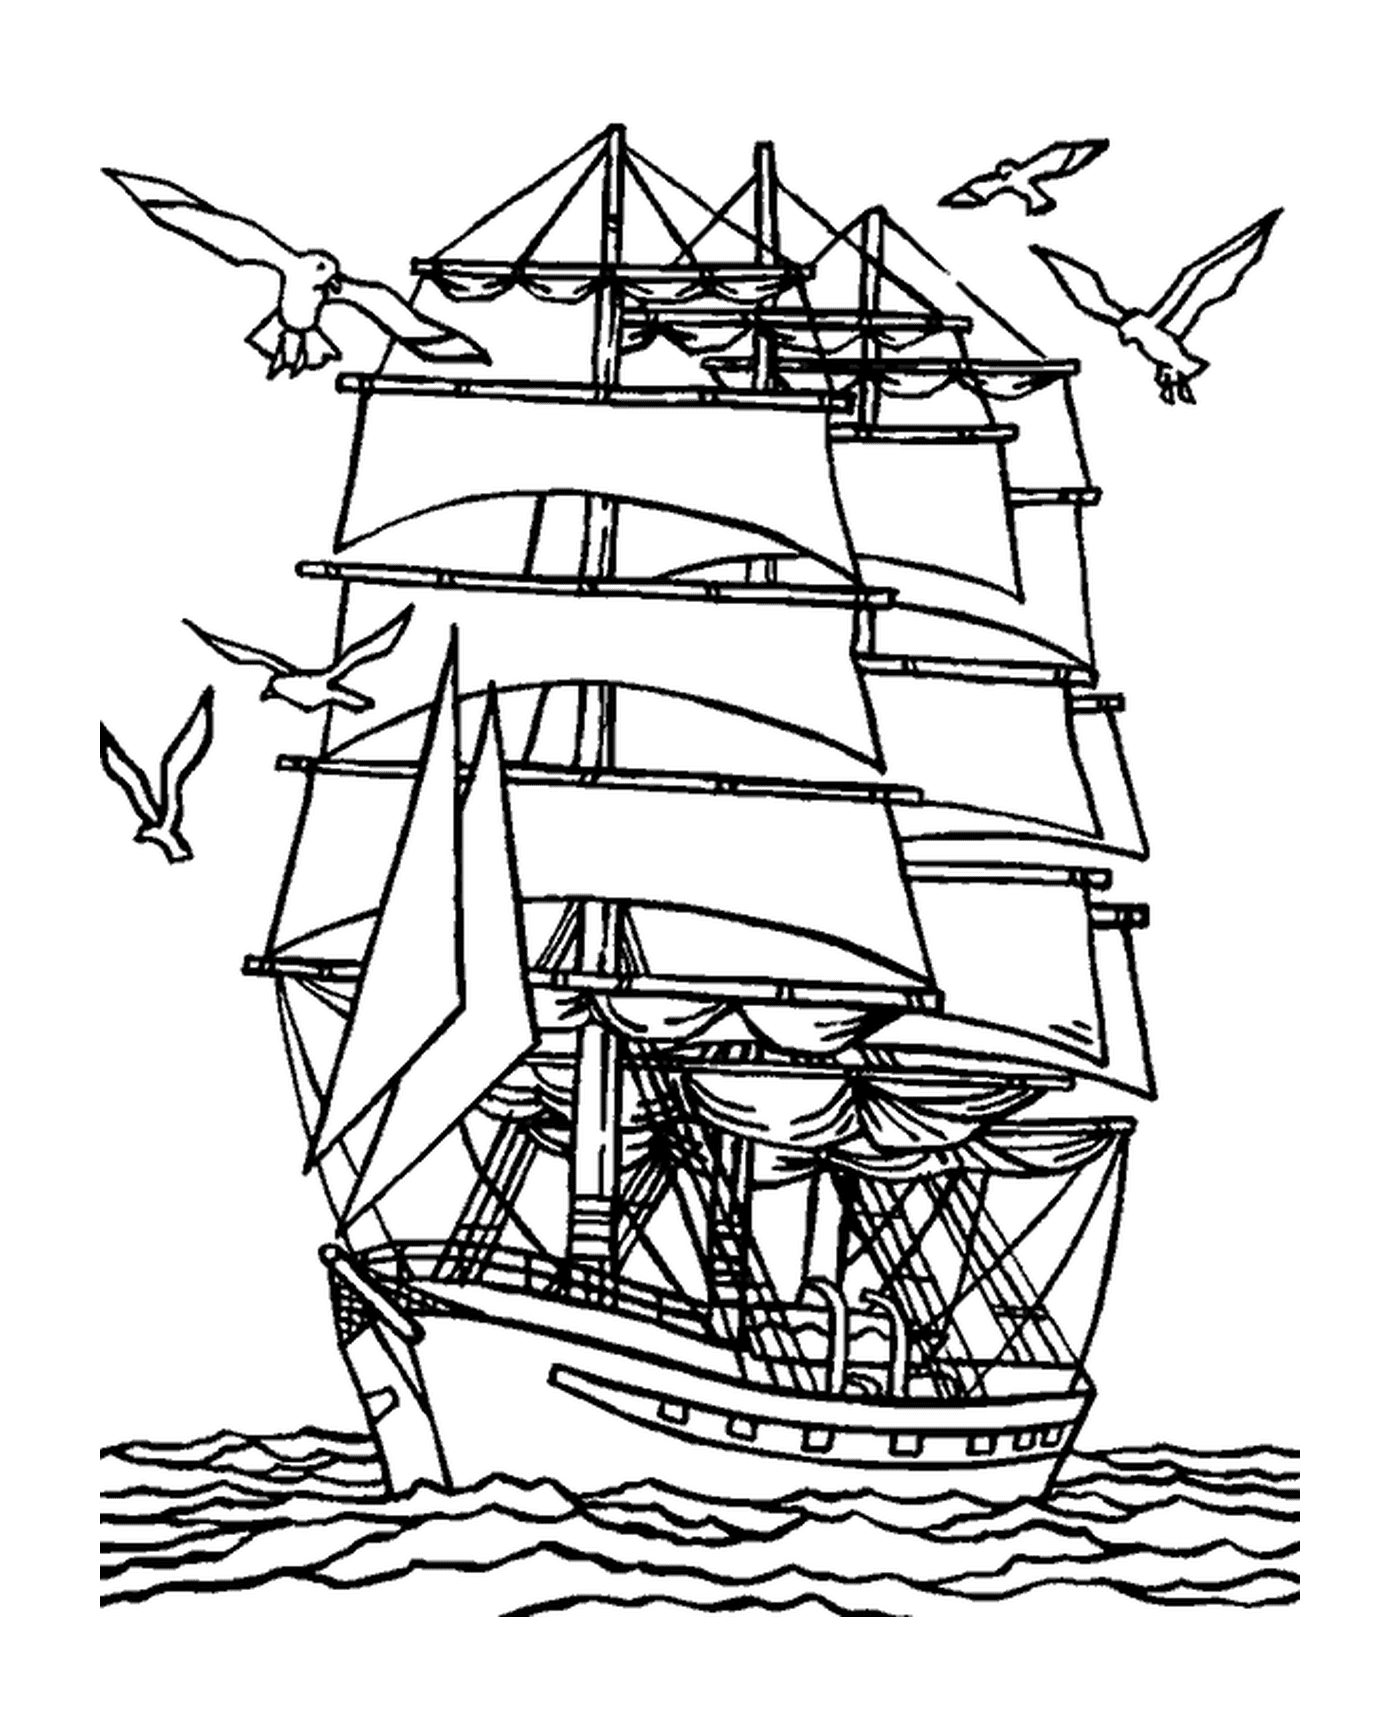  A ship near the coast with gulls 